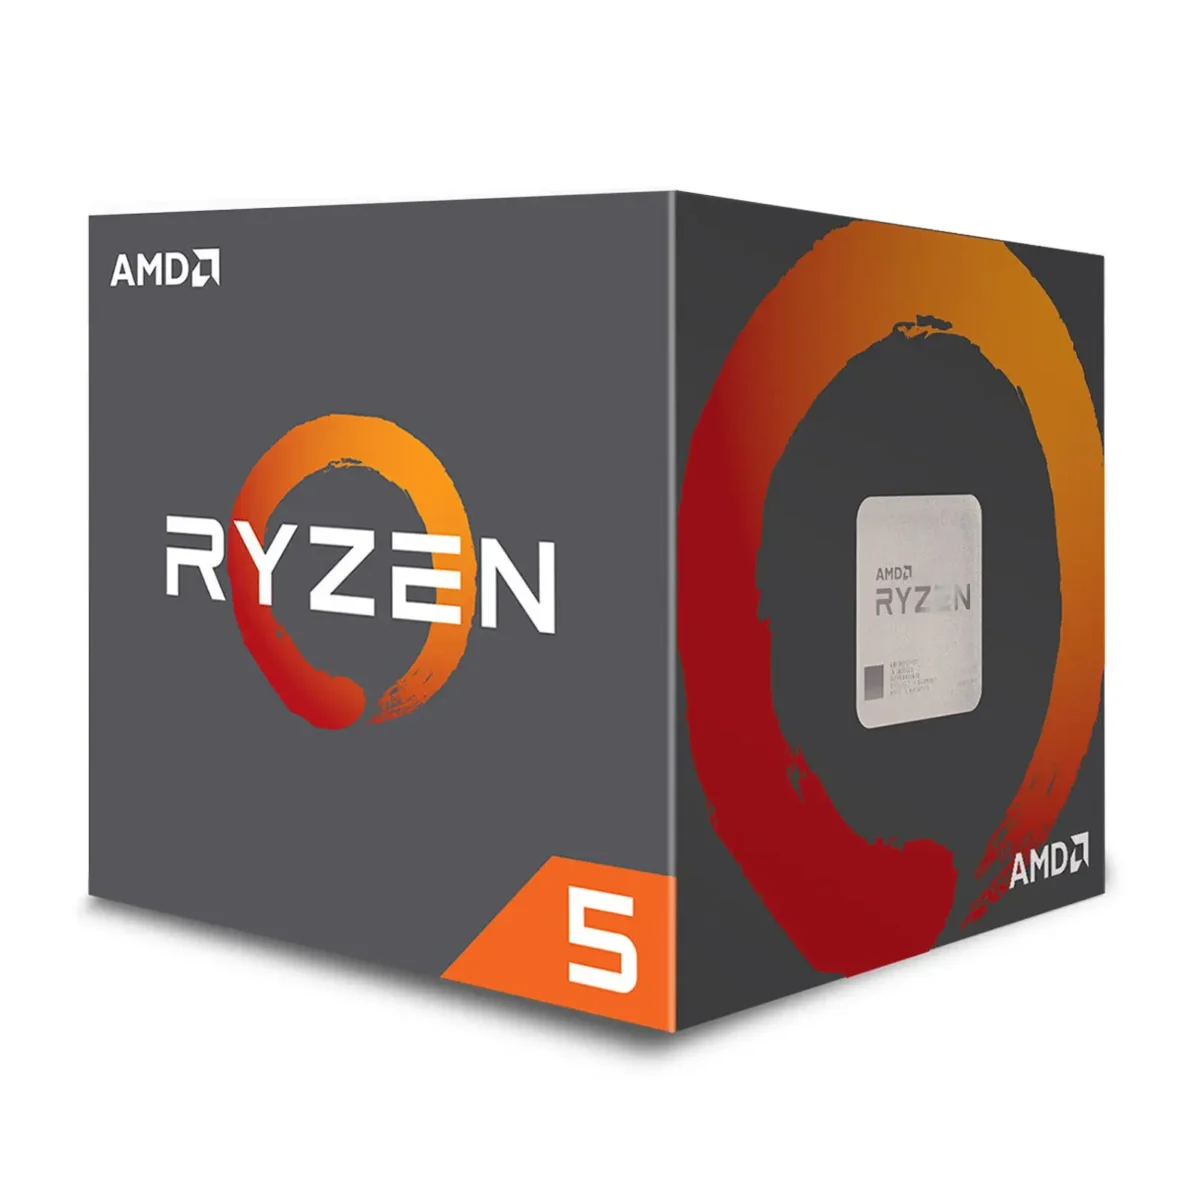 AMD Ryzen 5 2600 prix maroc marrakech